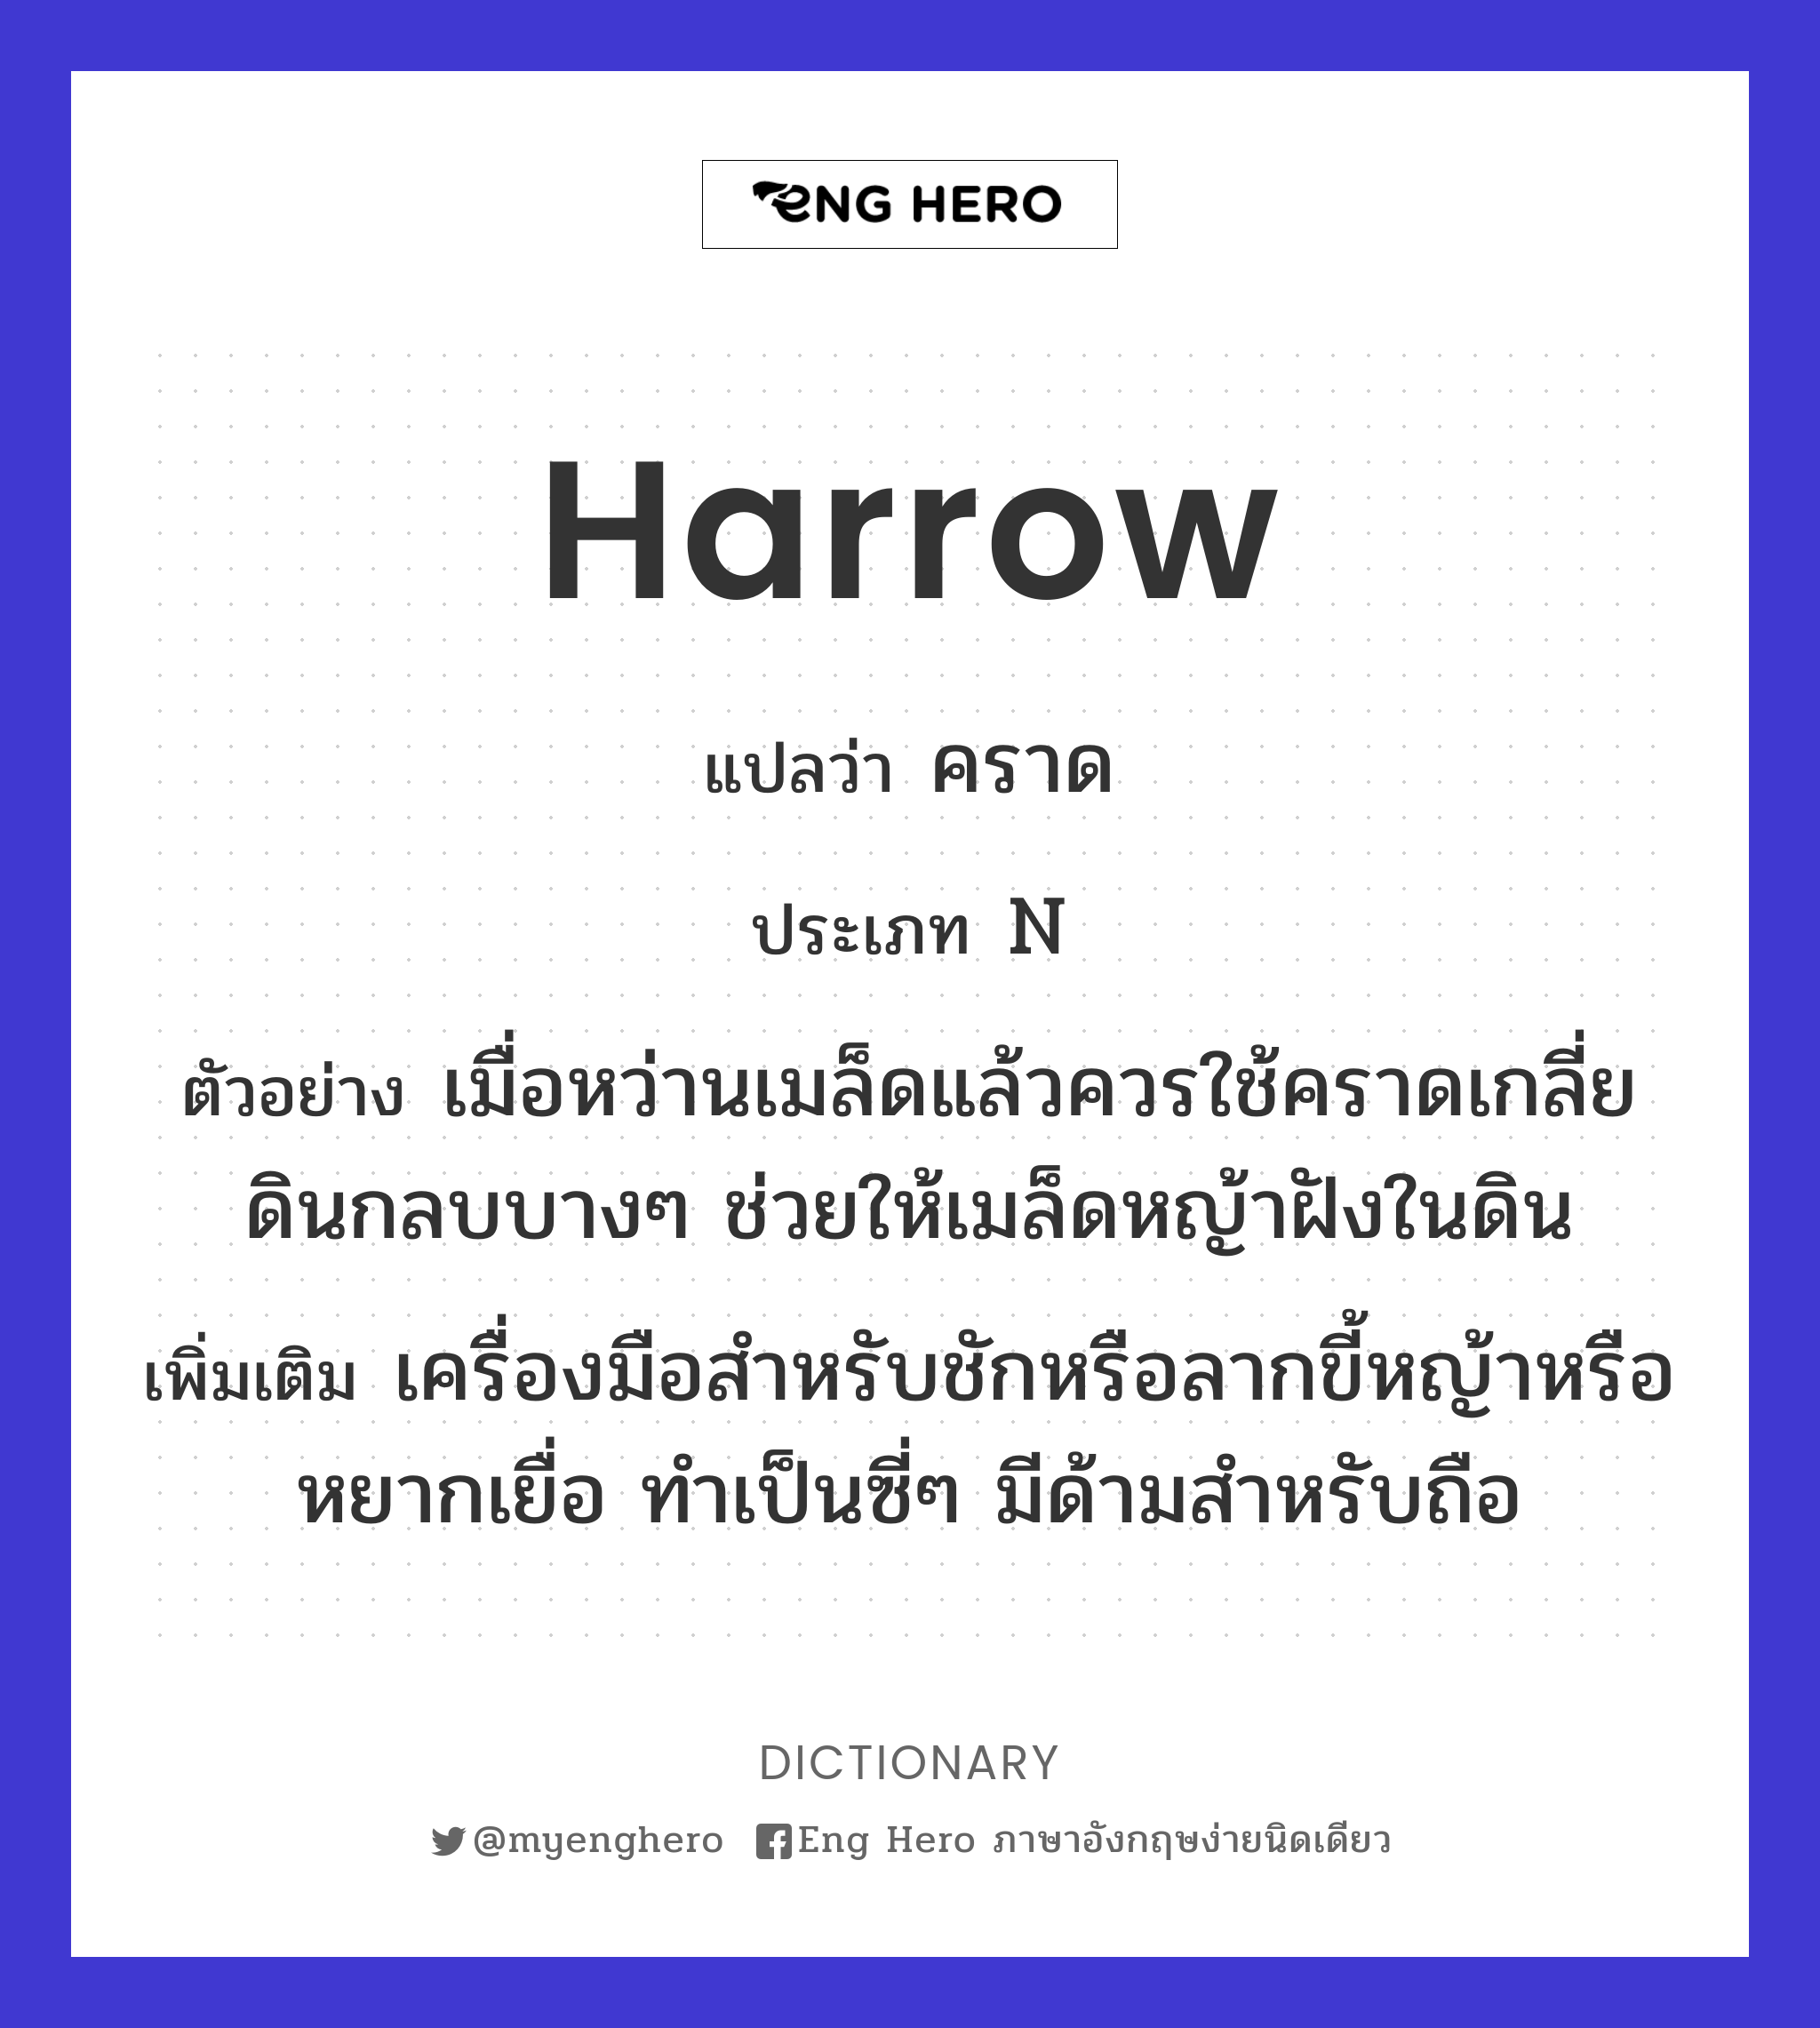 harrow